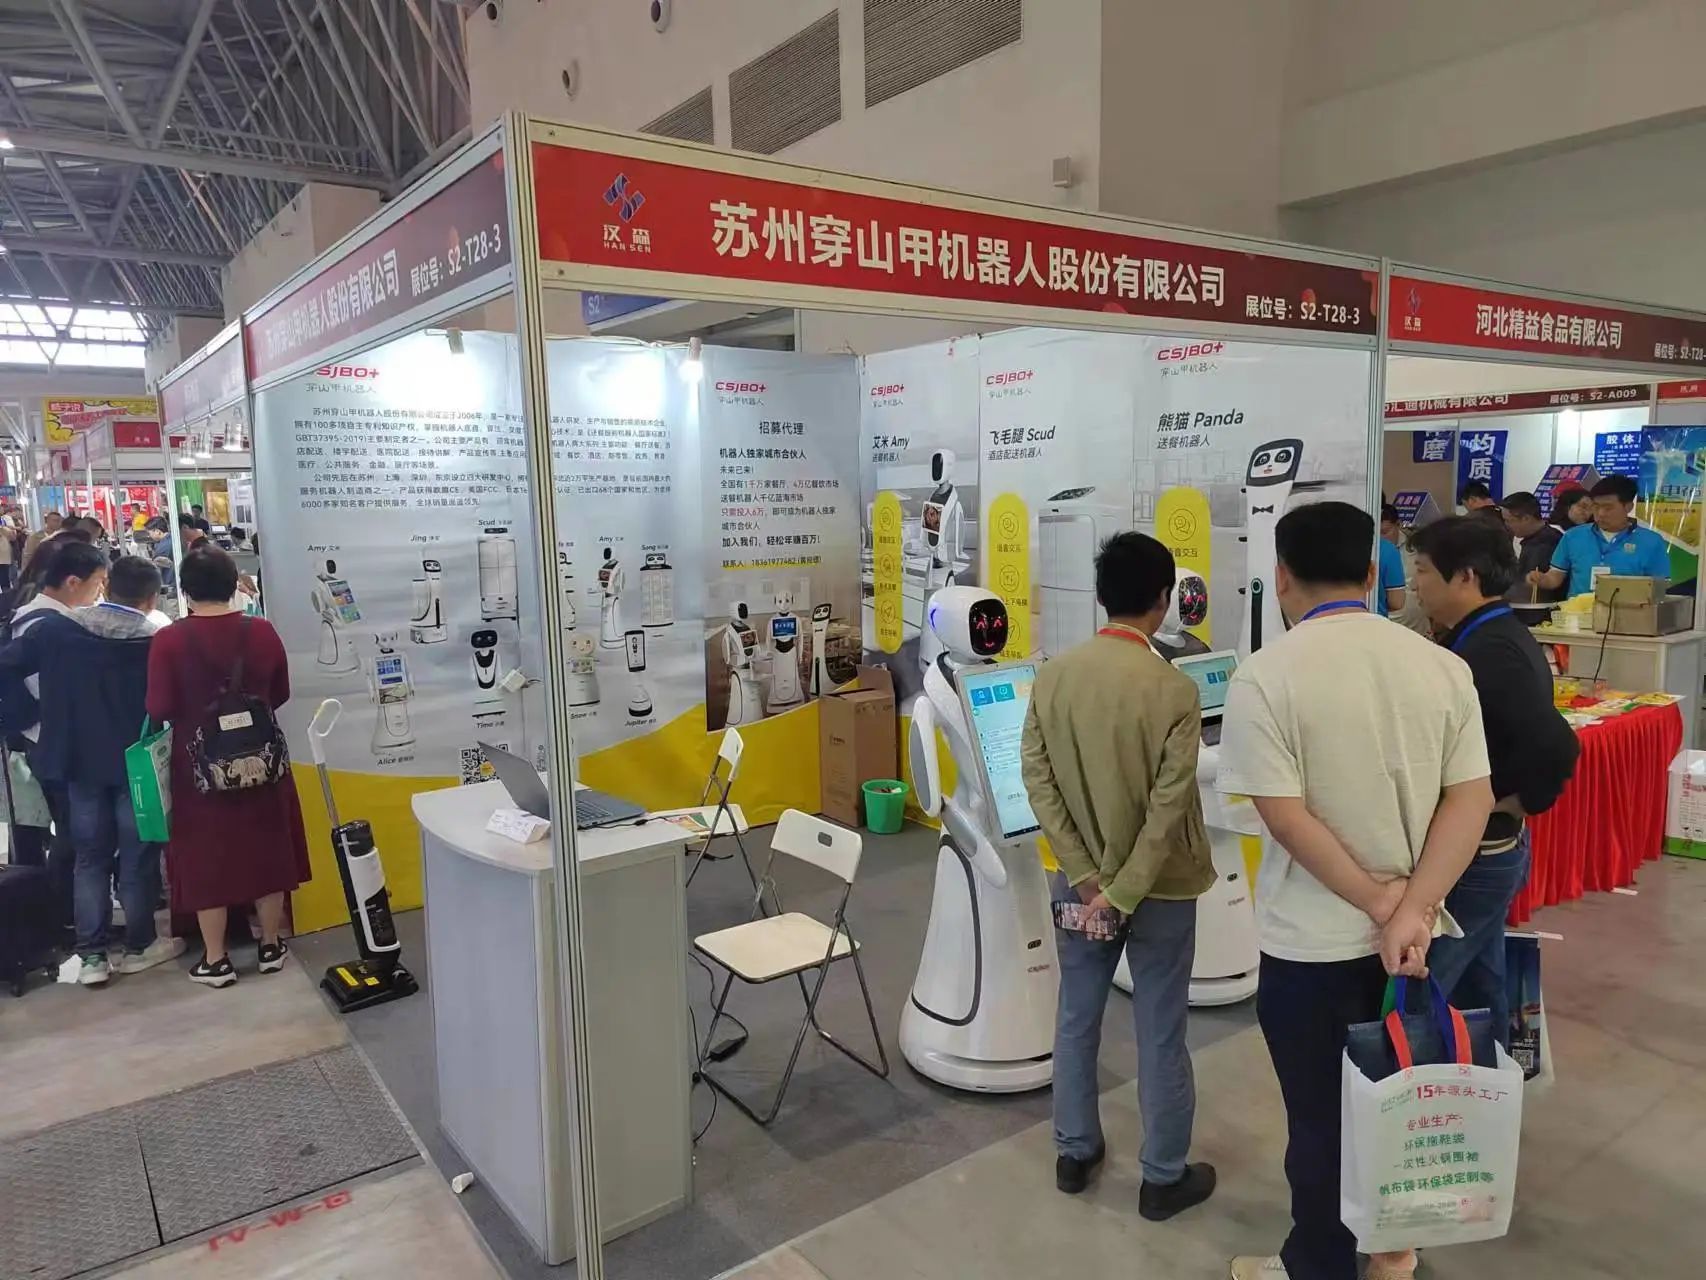 ظهر روبوت Pangolin في "معرض تشونغتشينغ الدولي العاشر لمكونات الأواني الساخنة"